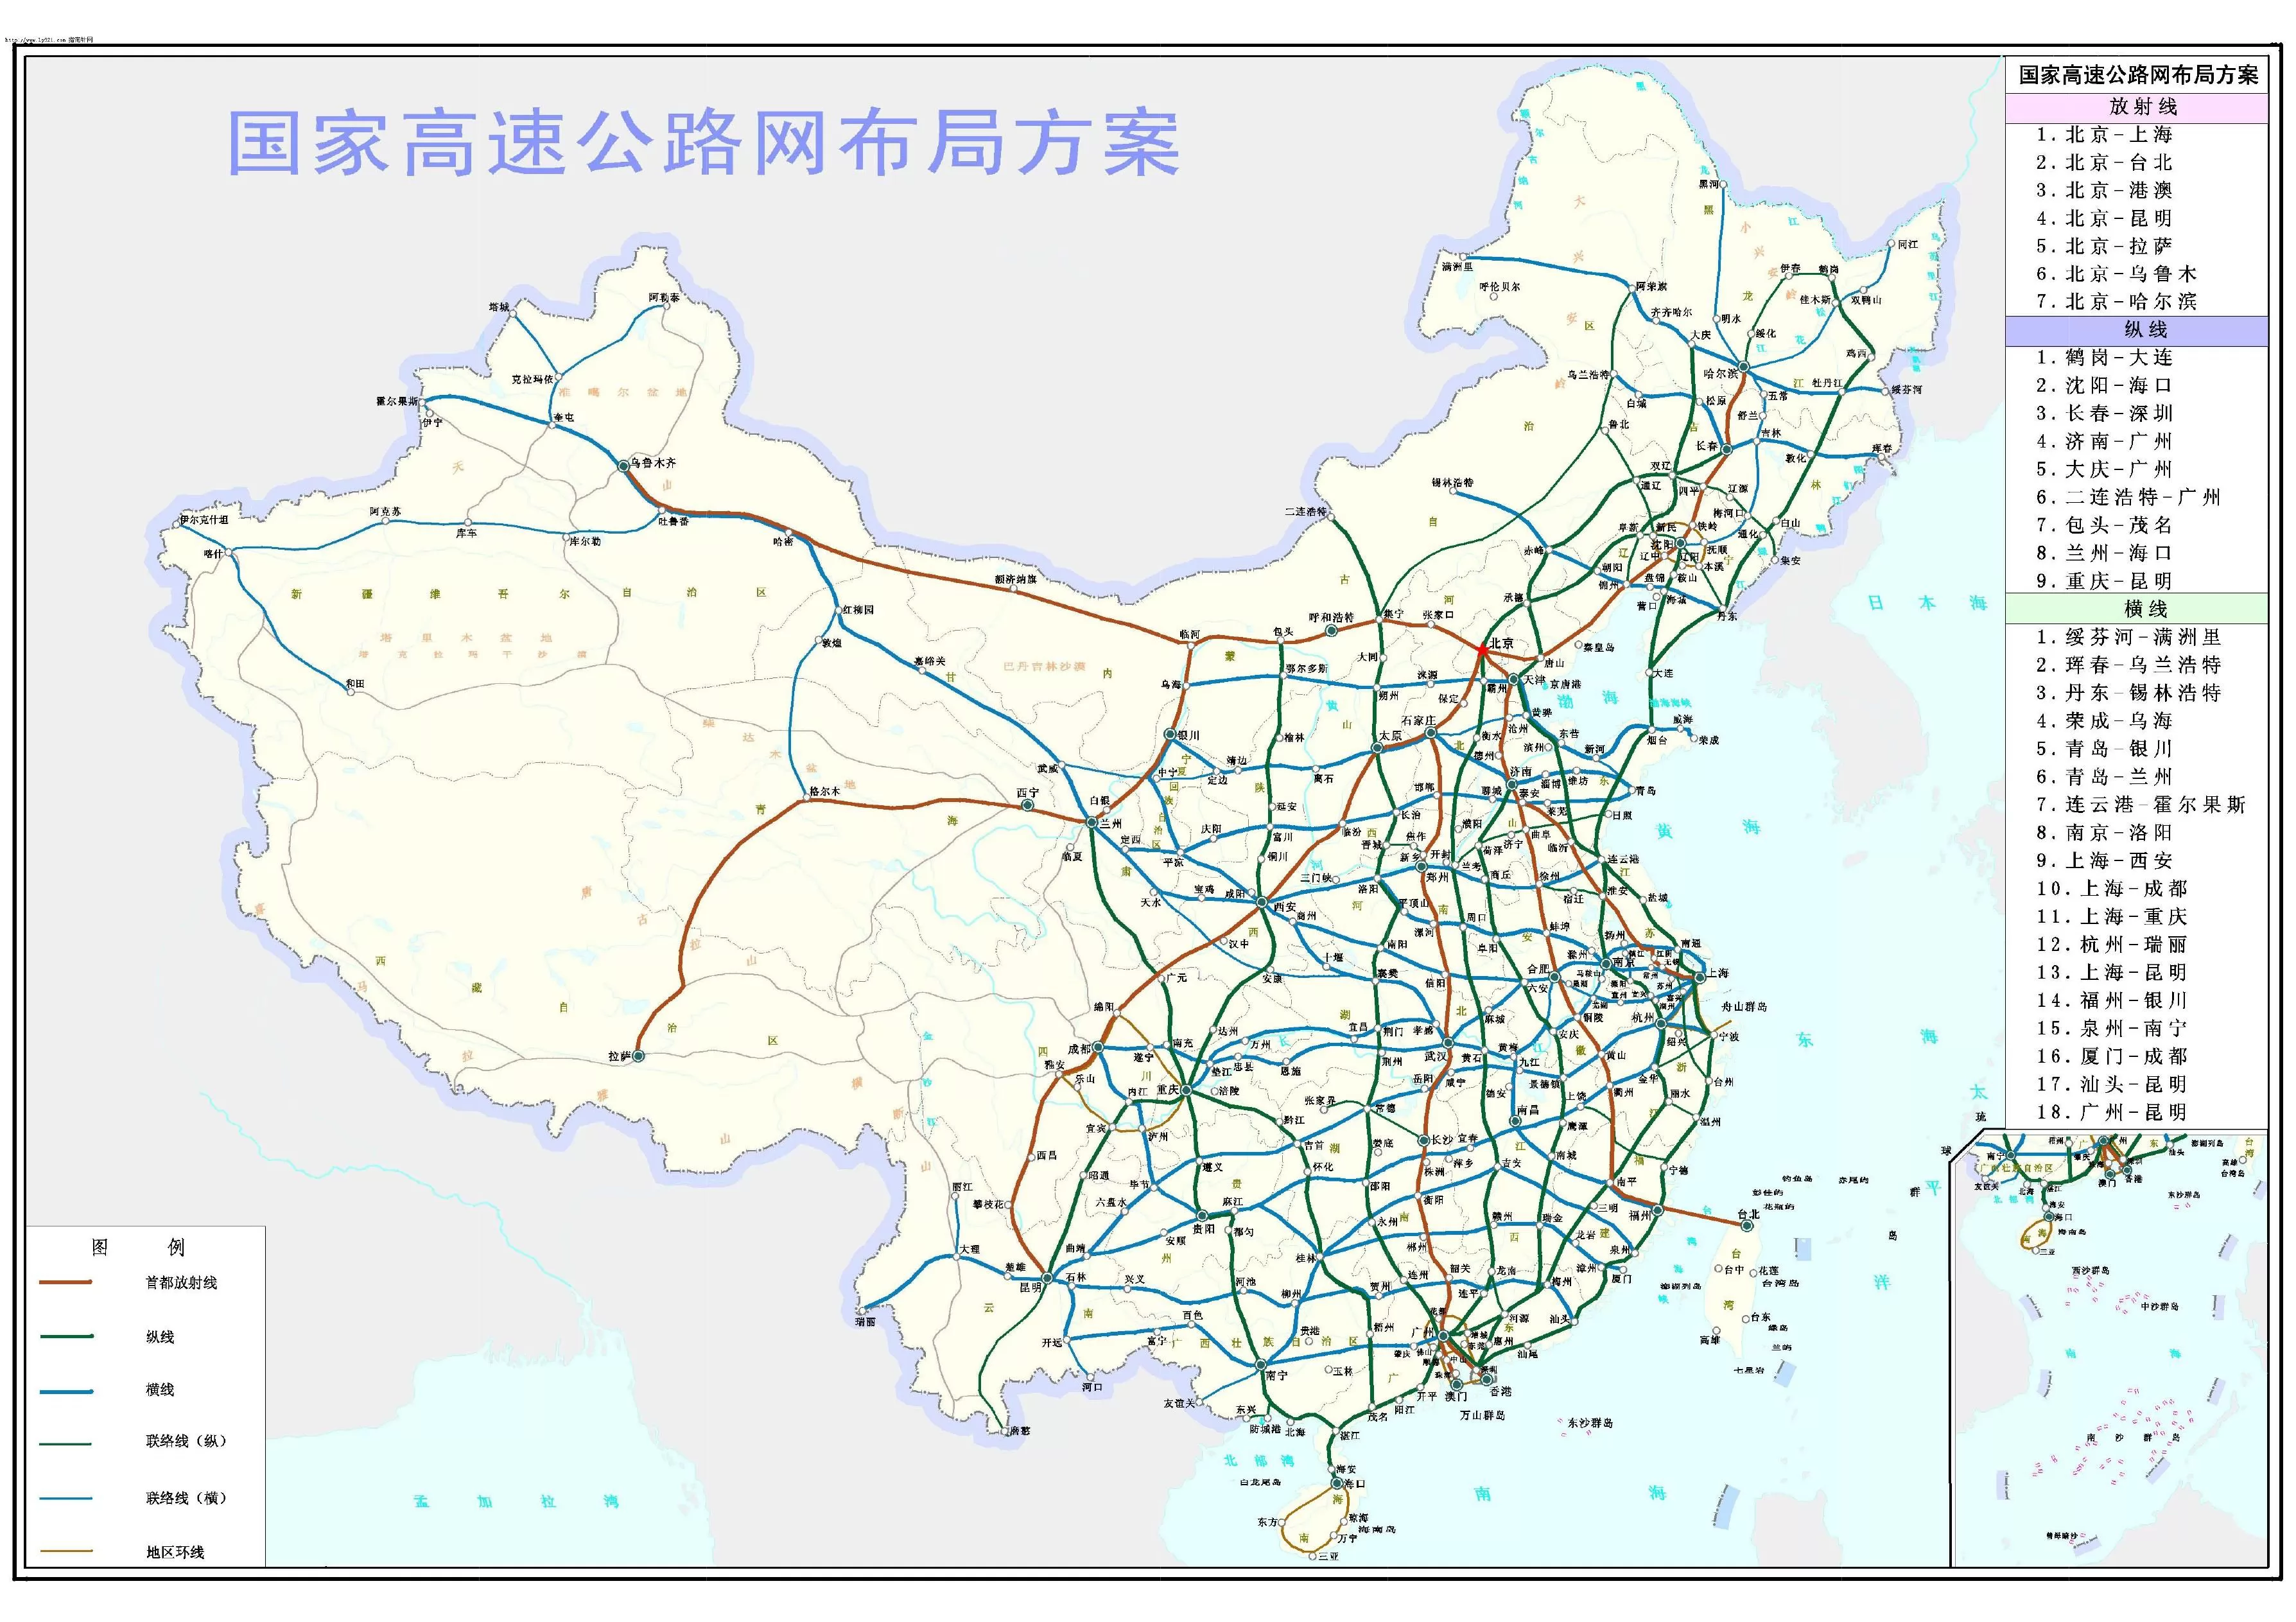 国家高速公路网布局方案 中国交通地图 地理教师网